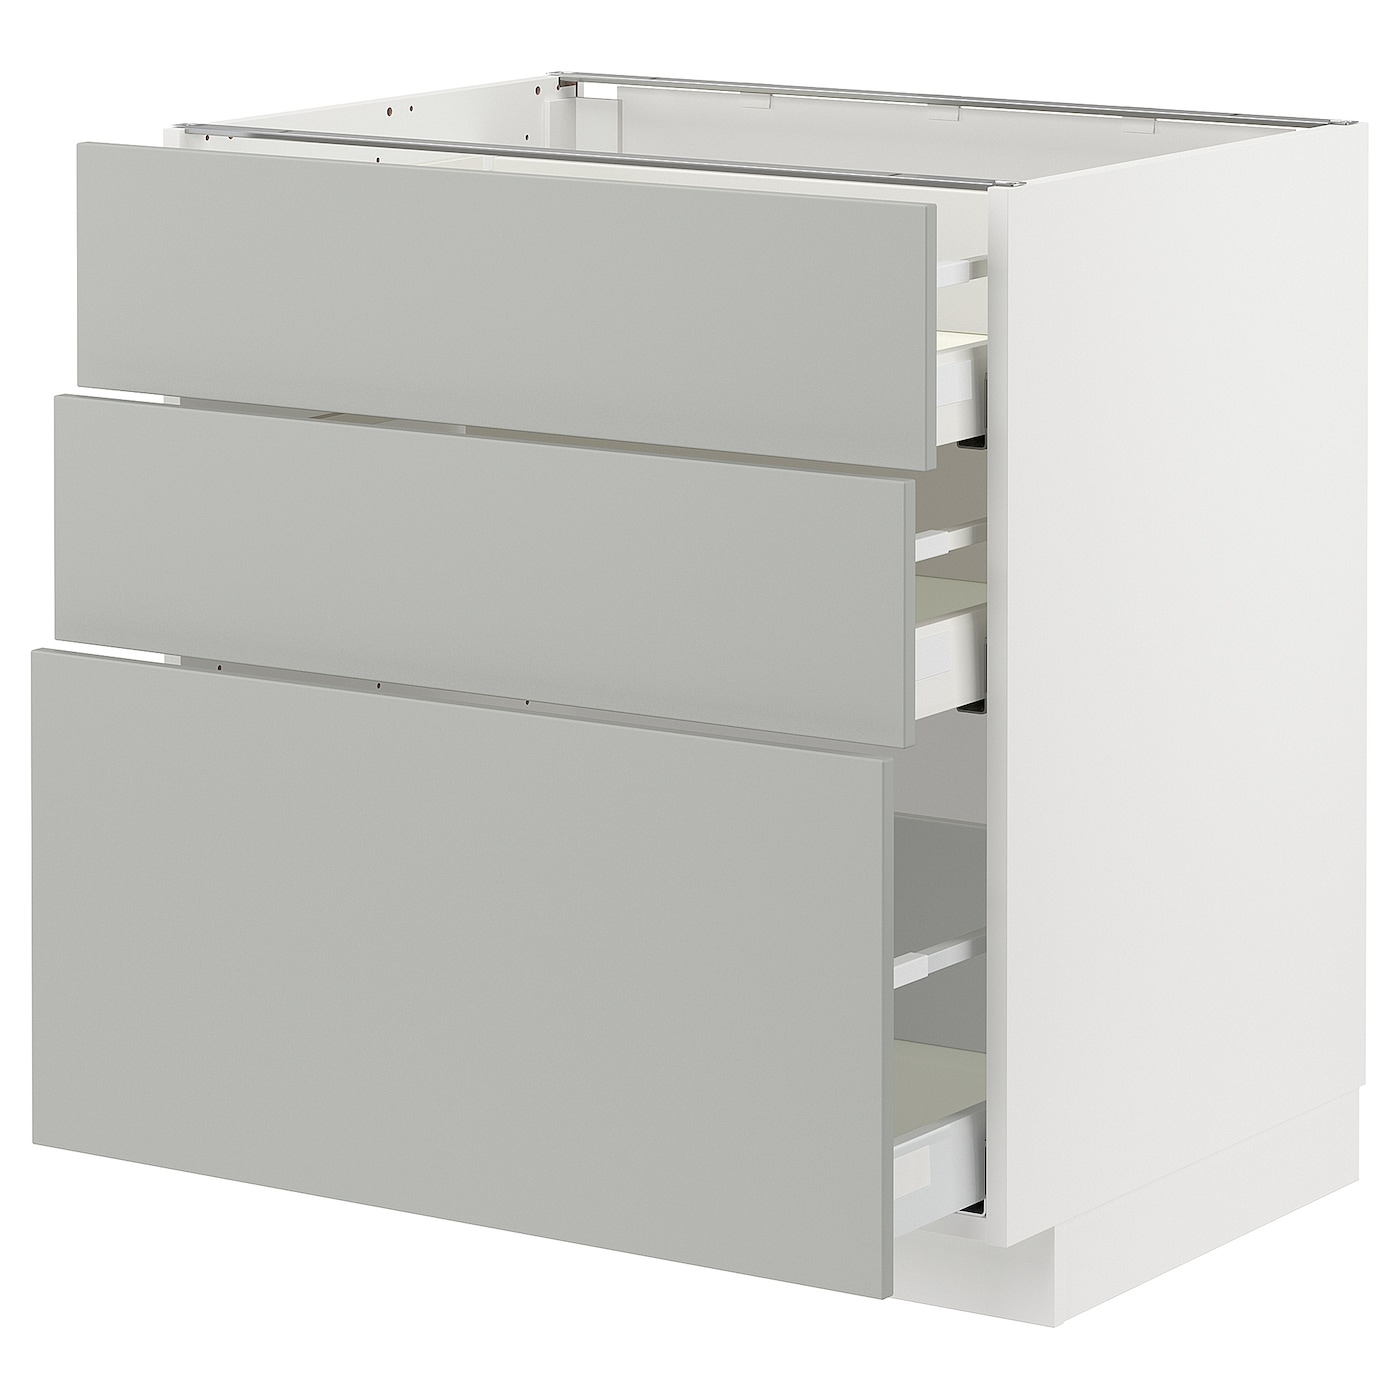 Напольный шкаф - METOD / MAXIMERA IKEA/ МЕТОД/ МАКСИМЕРА ИКЕА,  80х80 см, белый/серый